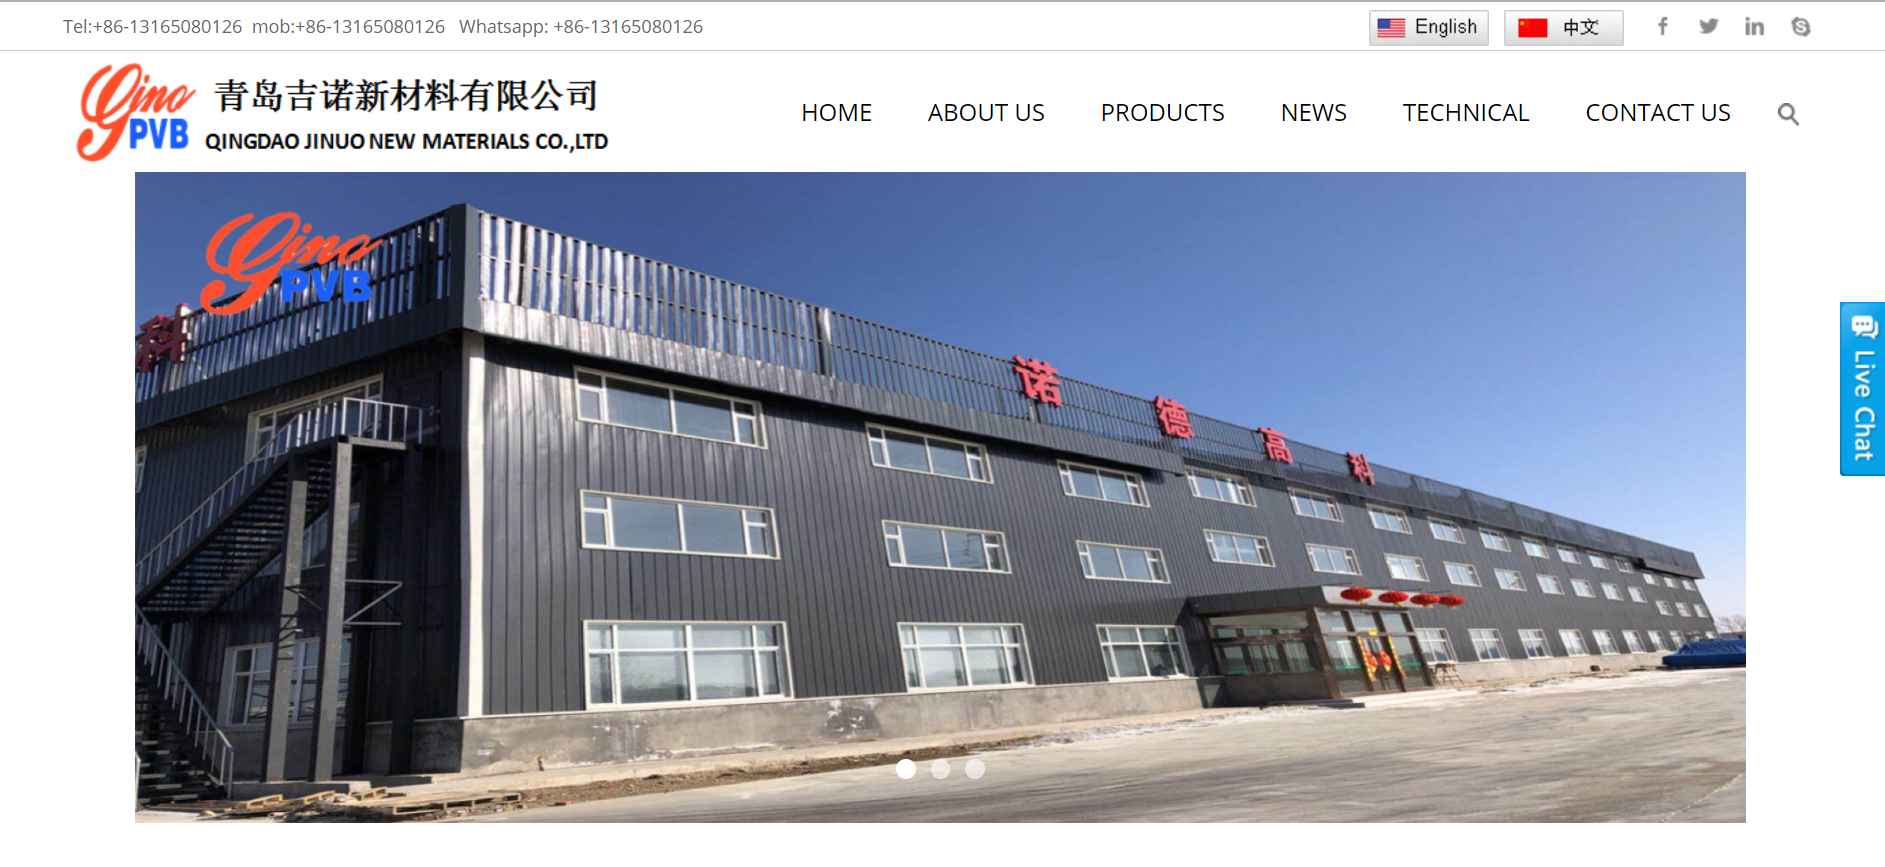 Qingdao Jinuo New Materials Co., Ltd.